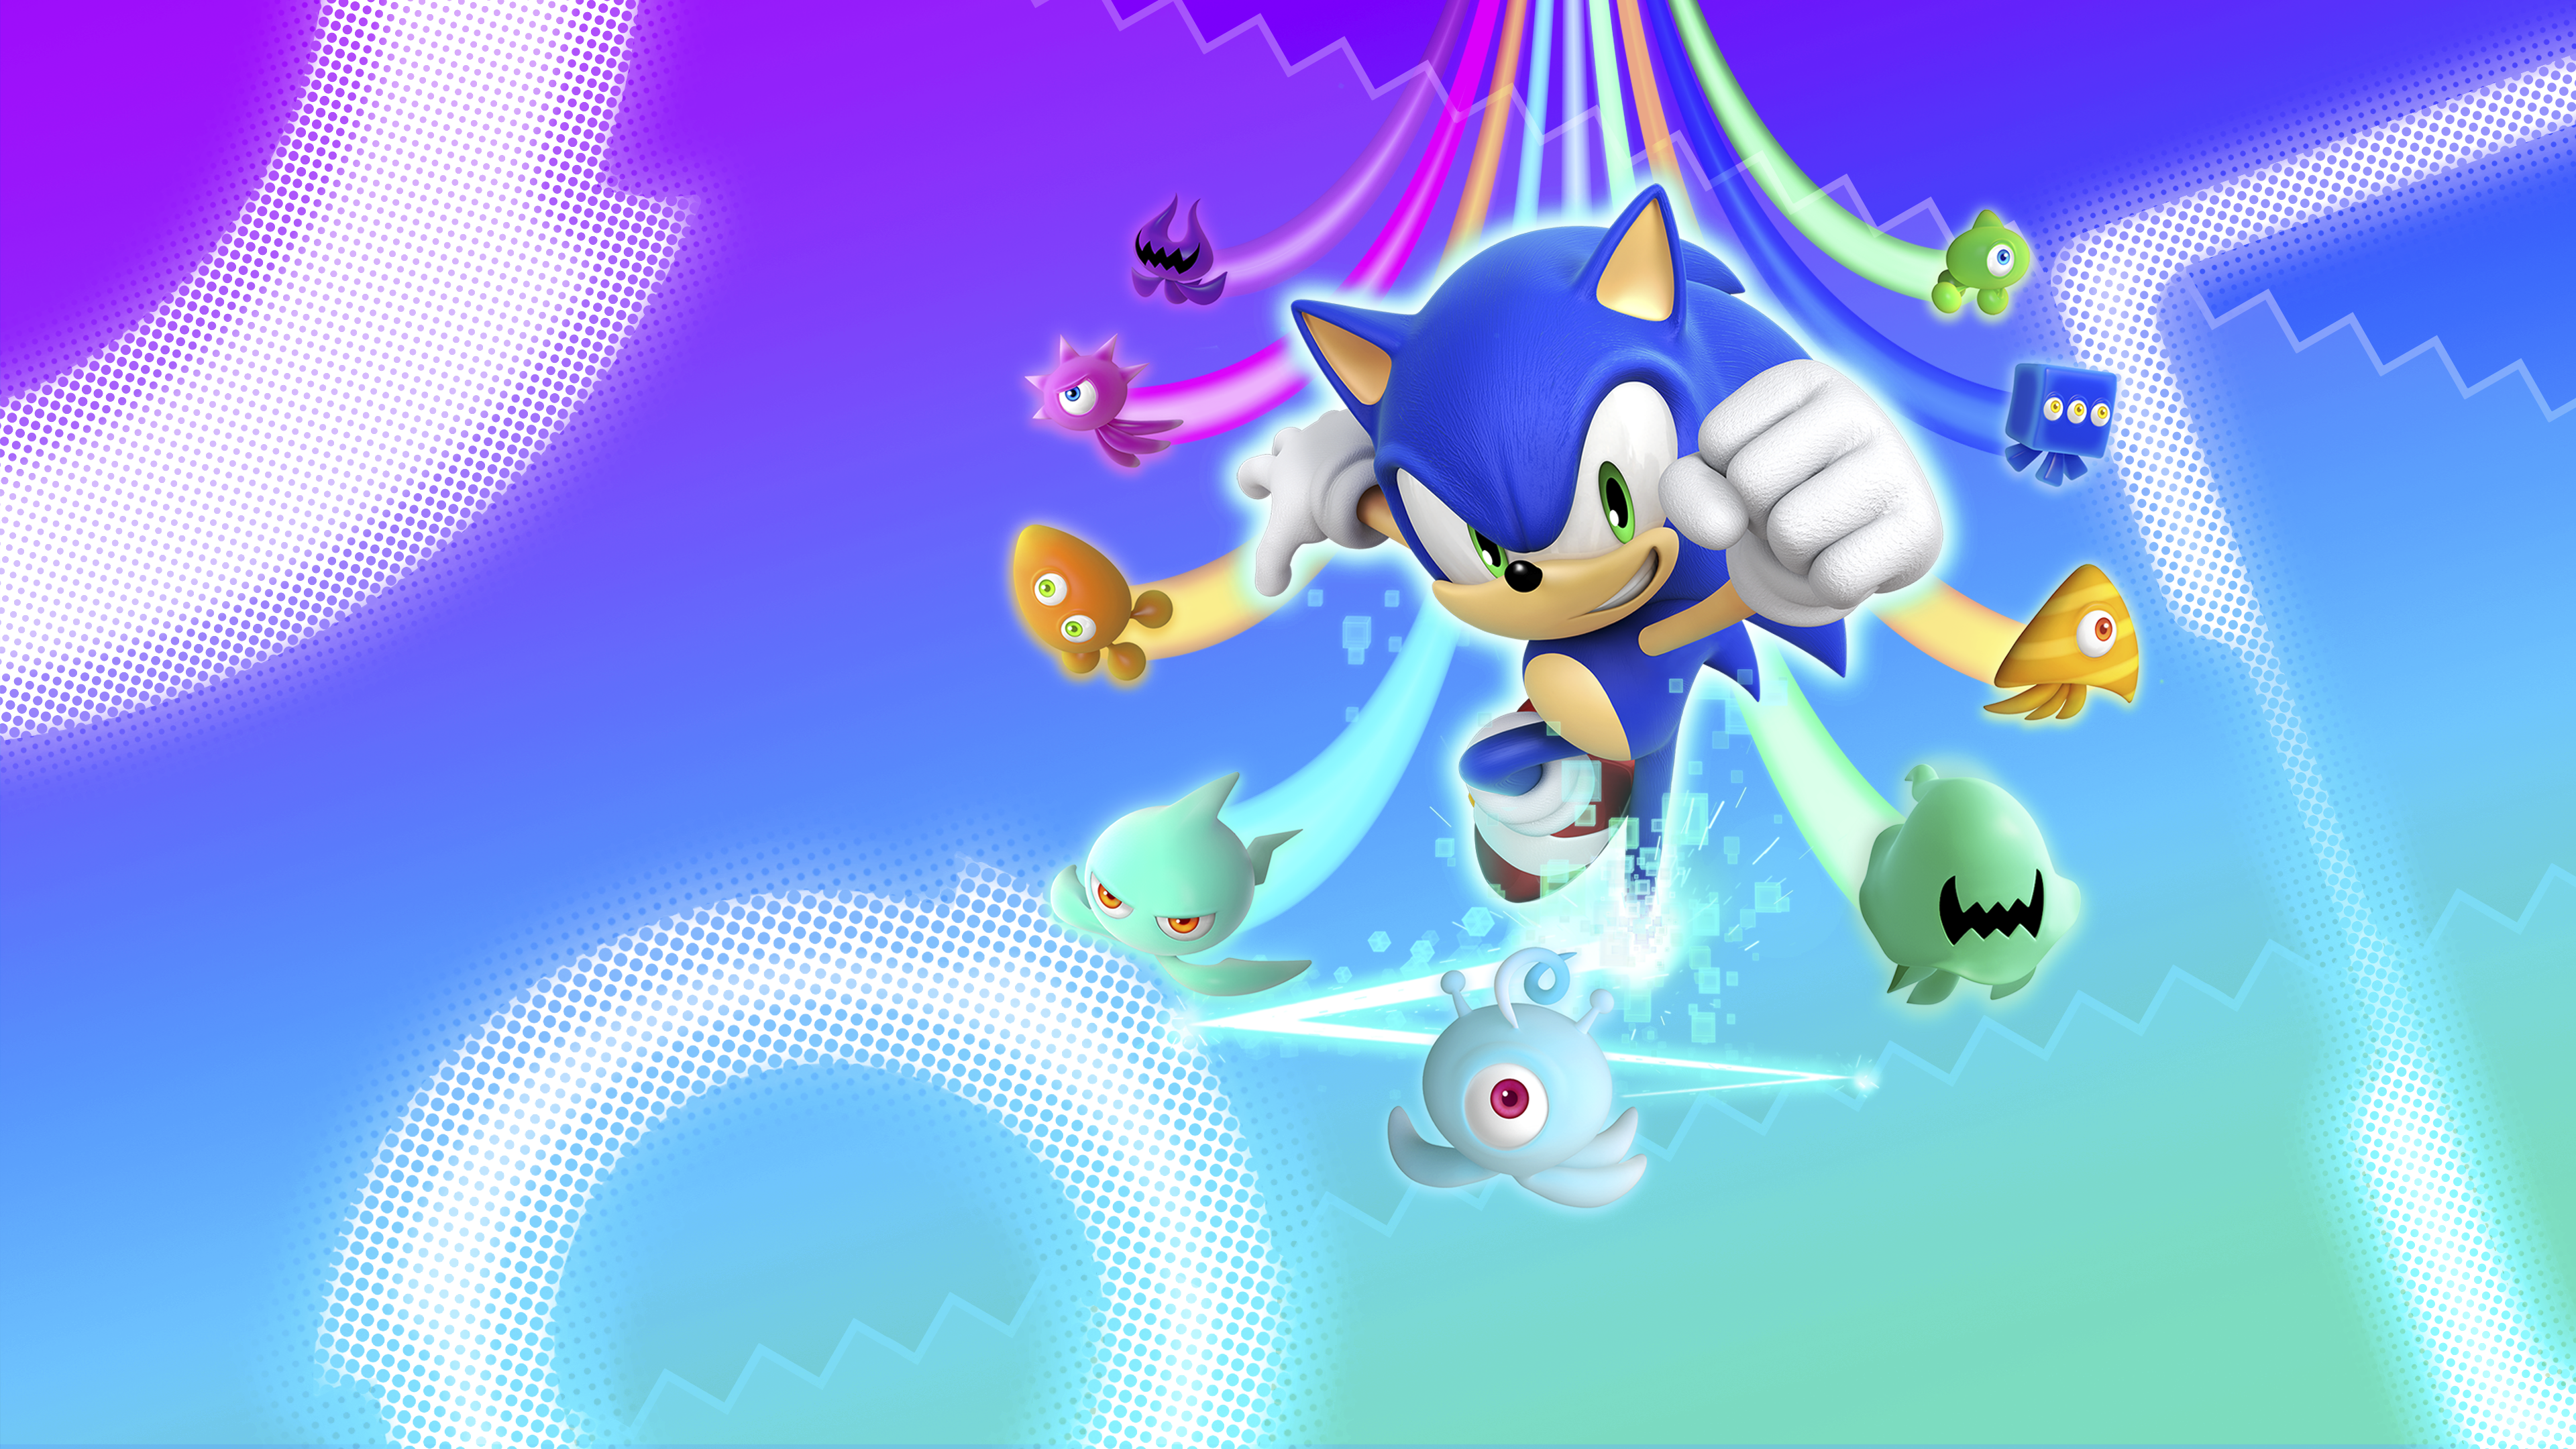 Sonic Colors: Ultimate heldenillustratie